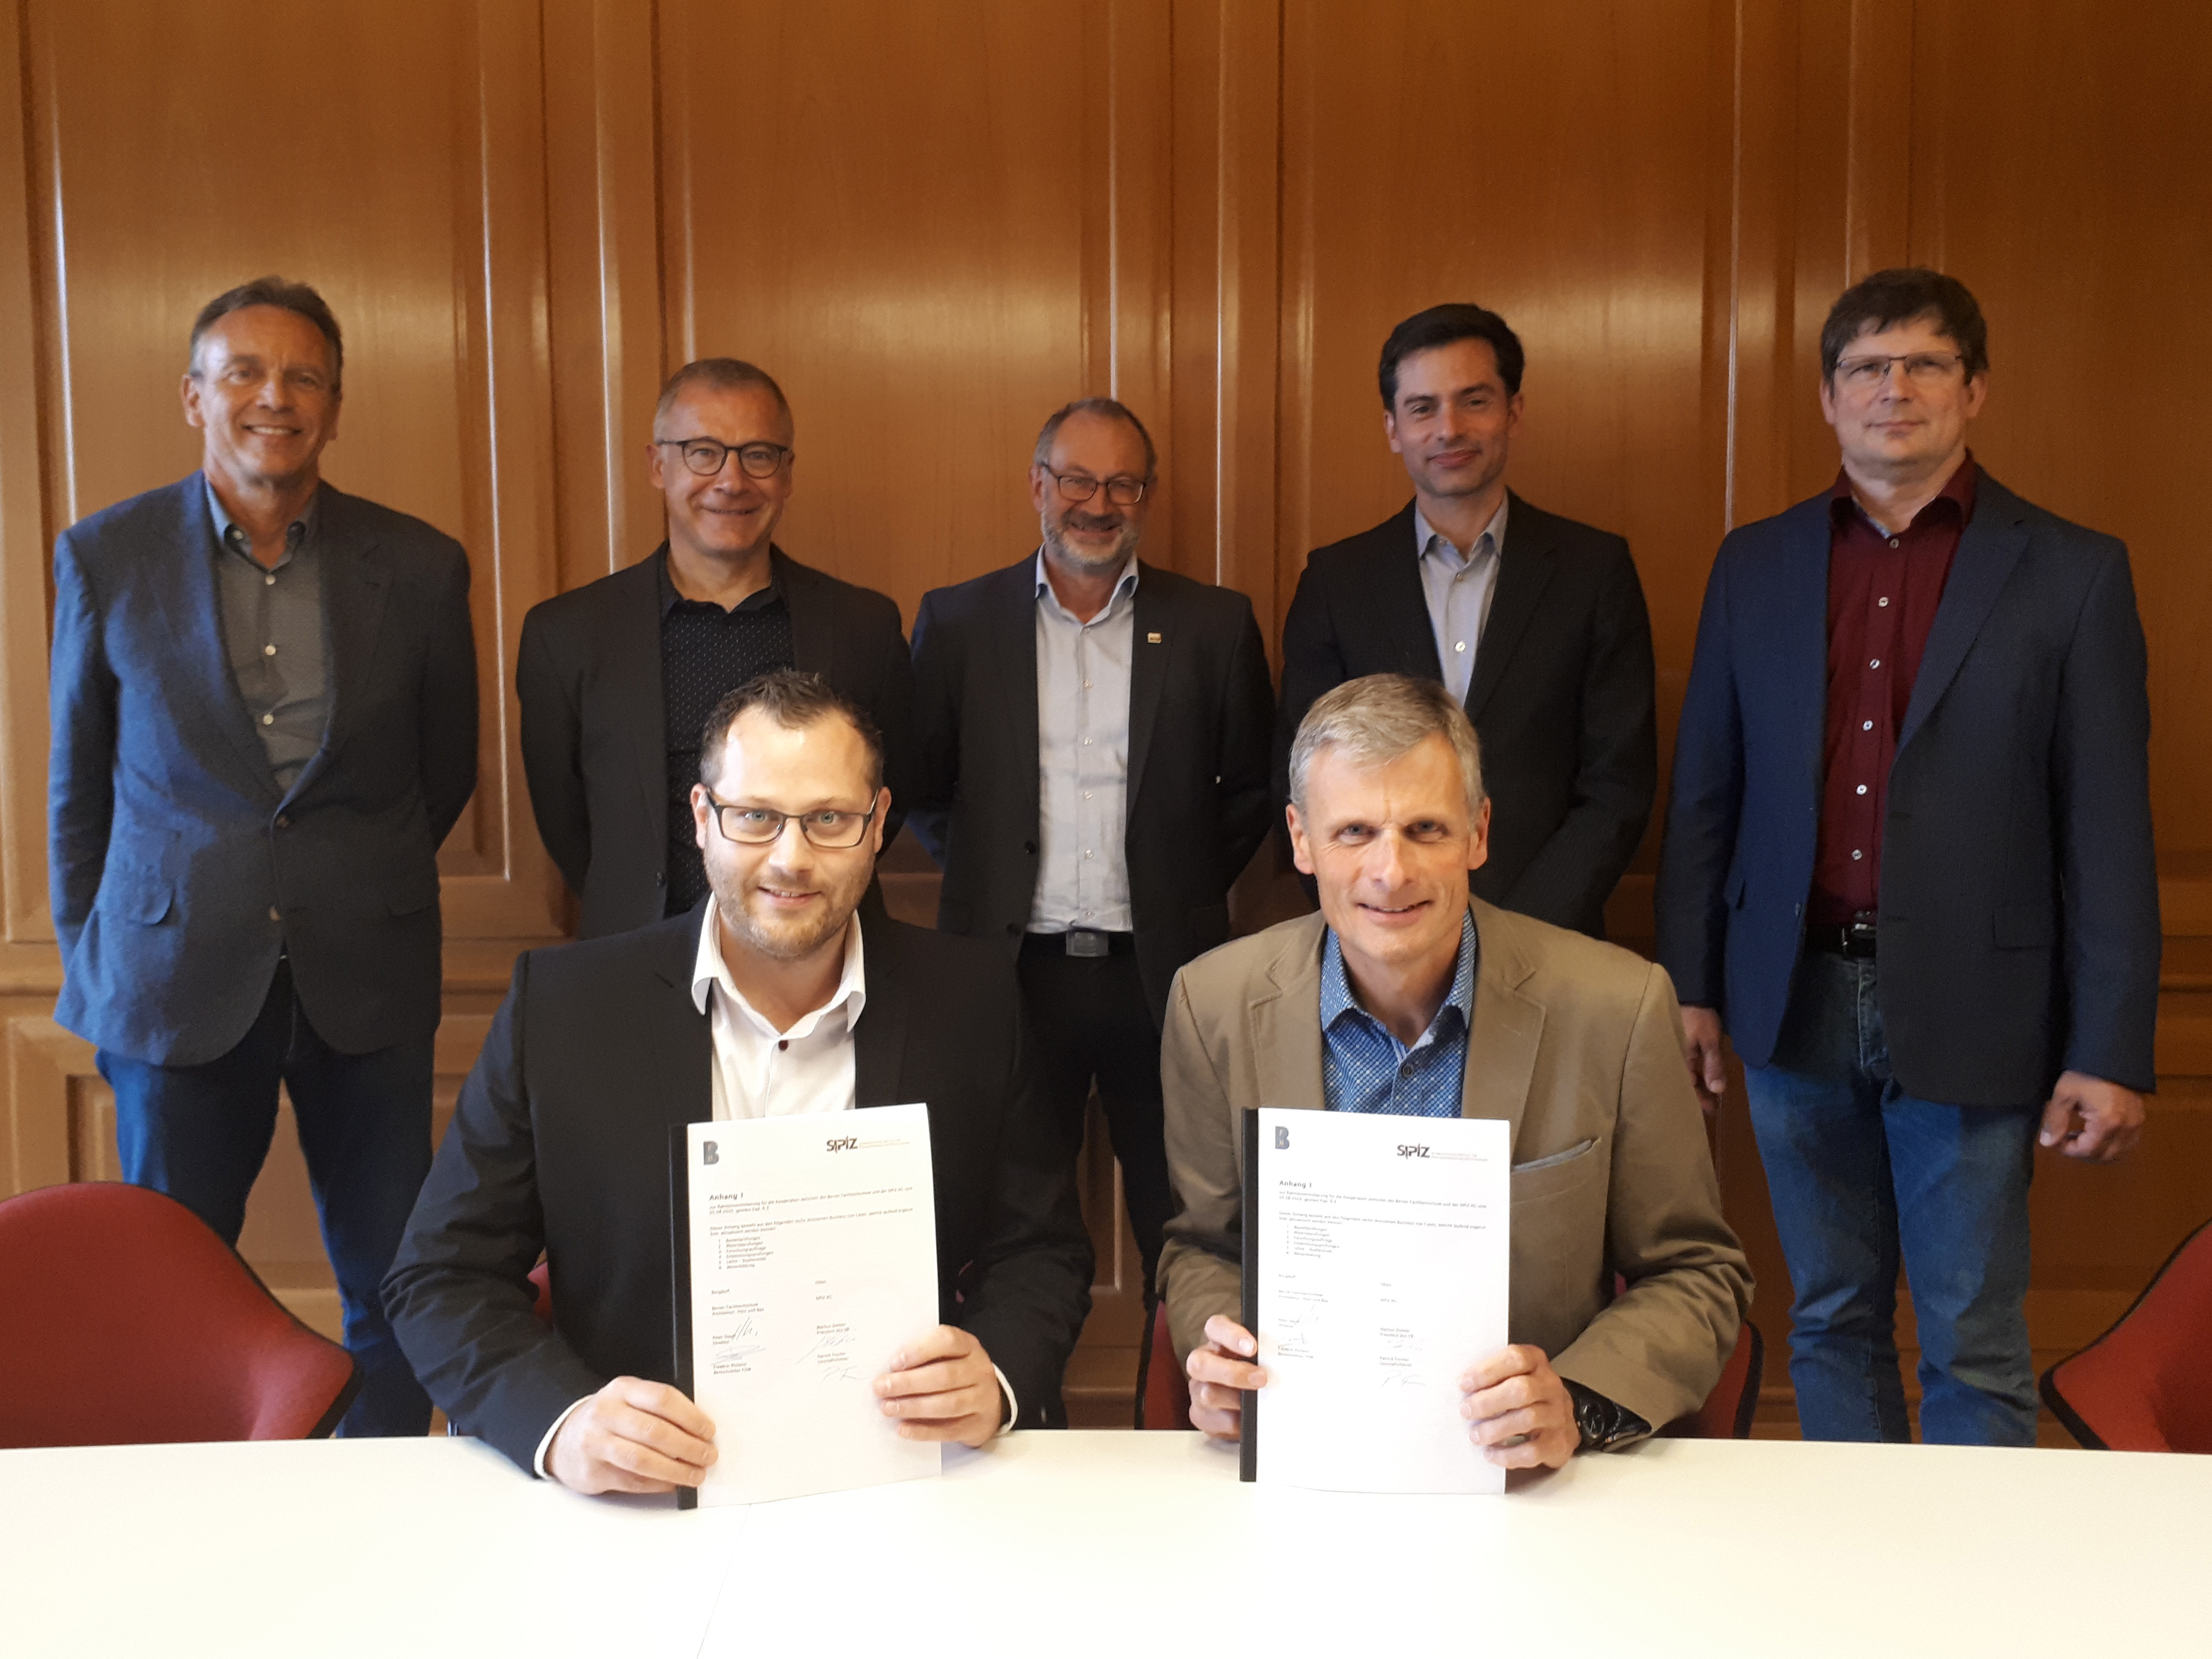 Signature du contrat à Bienne, de g. à d.: Markus Stebler, Christoph Rellstab, Patrick Fischer, Daniel Furrer, Frédéric Pichelin, Peter Staub, Andreas Hämmerli.